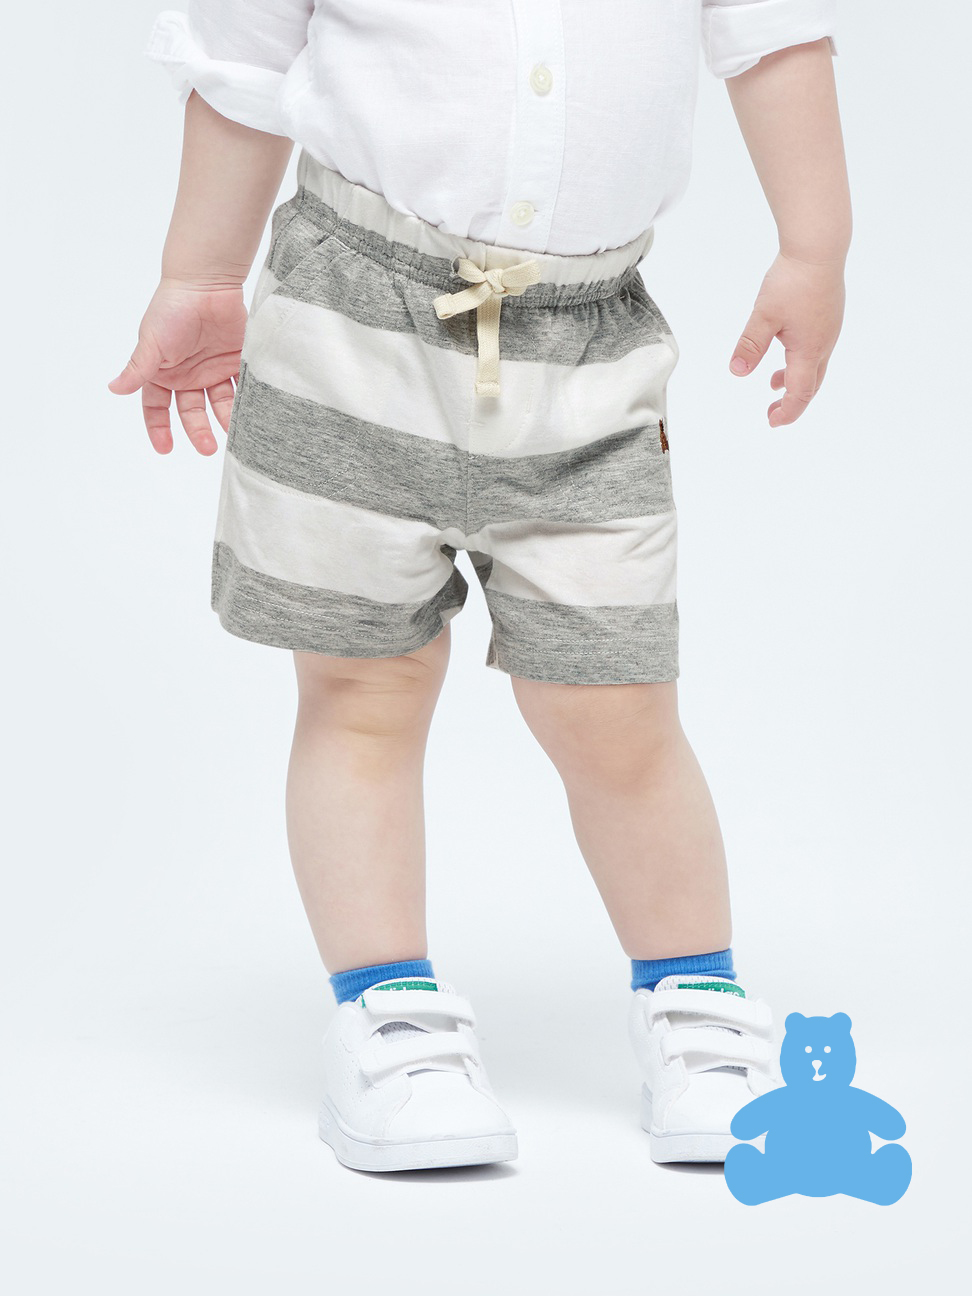 嬰兒|布萊納系列 清爽條紋透氣短褲